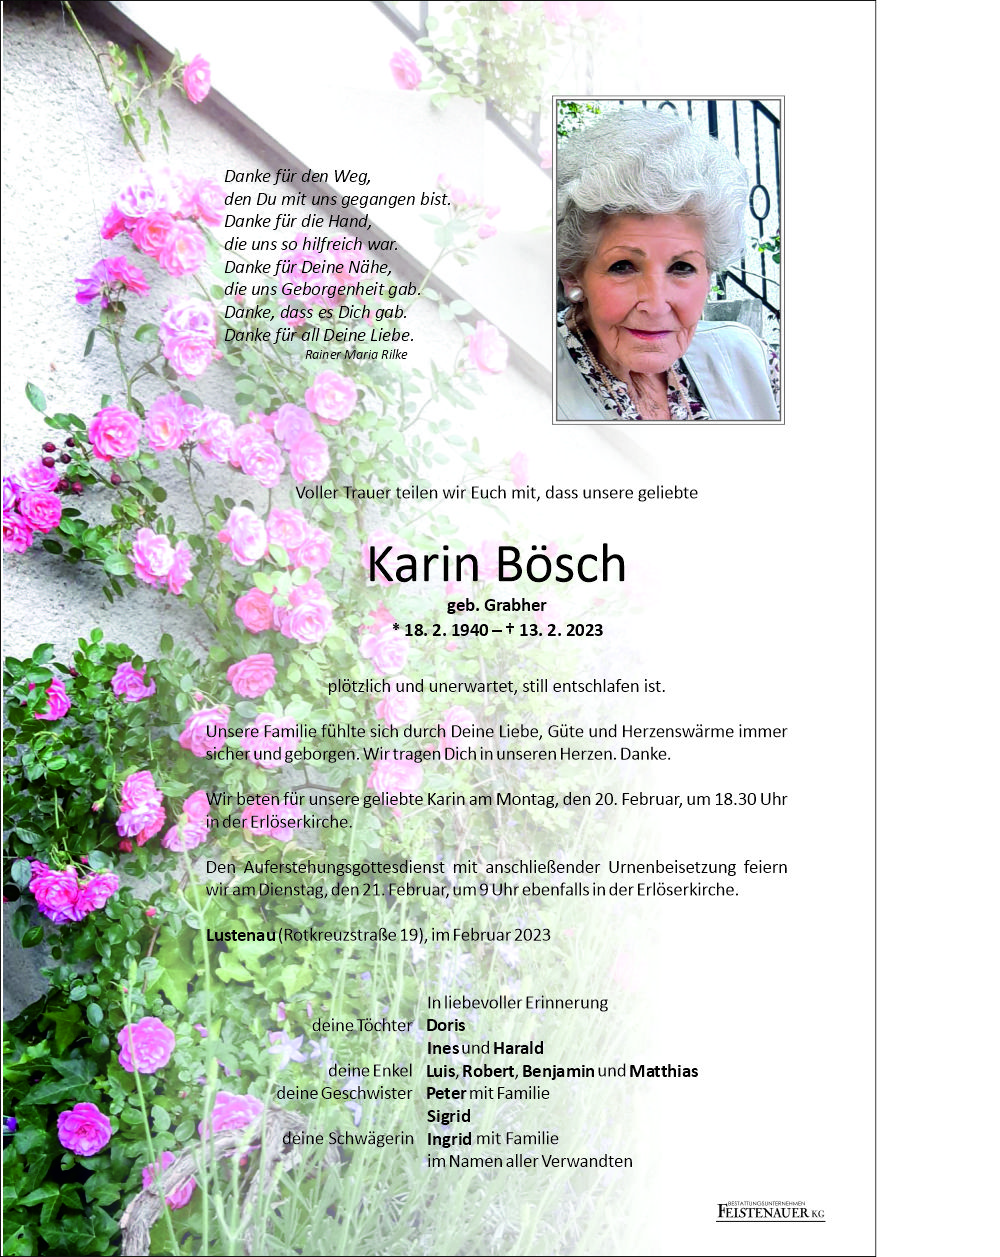 Karin Bösch